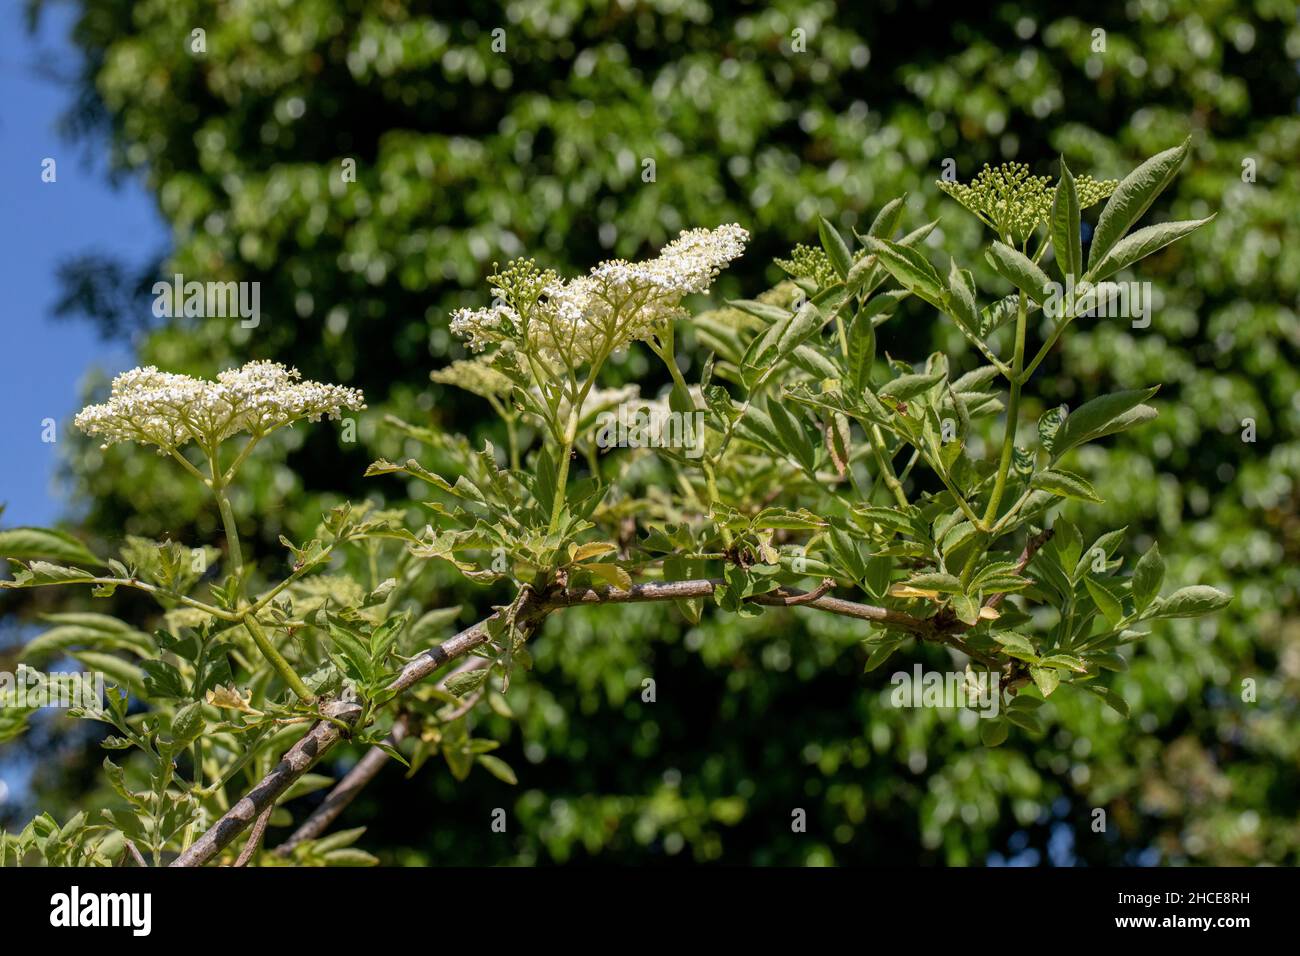 Holunder (Sambucus nigra). In Blüte. Schirmförmige, flach gedeckte, weiß geblühte Blütenblattköpfe. Insekt bestäubt. Waldrandflora. Wirbellose gesucht Stockfoto